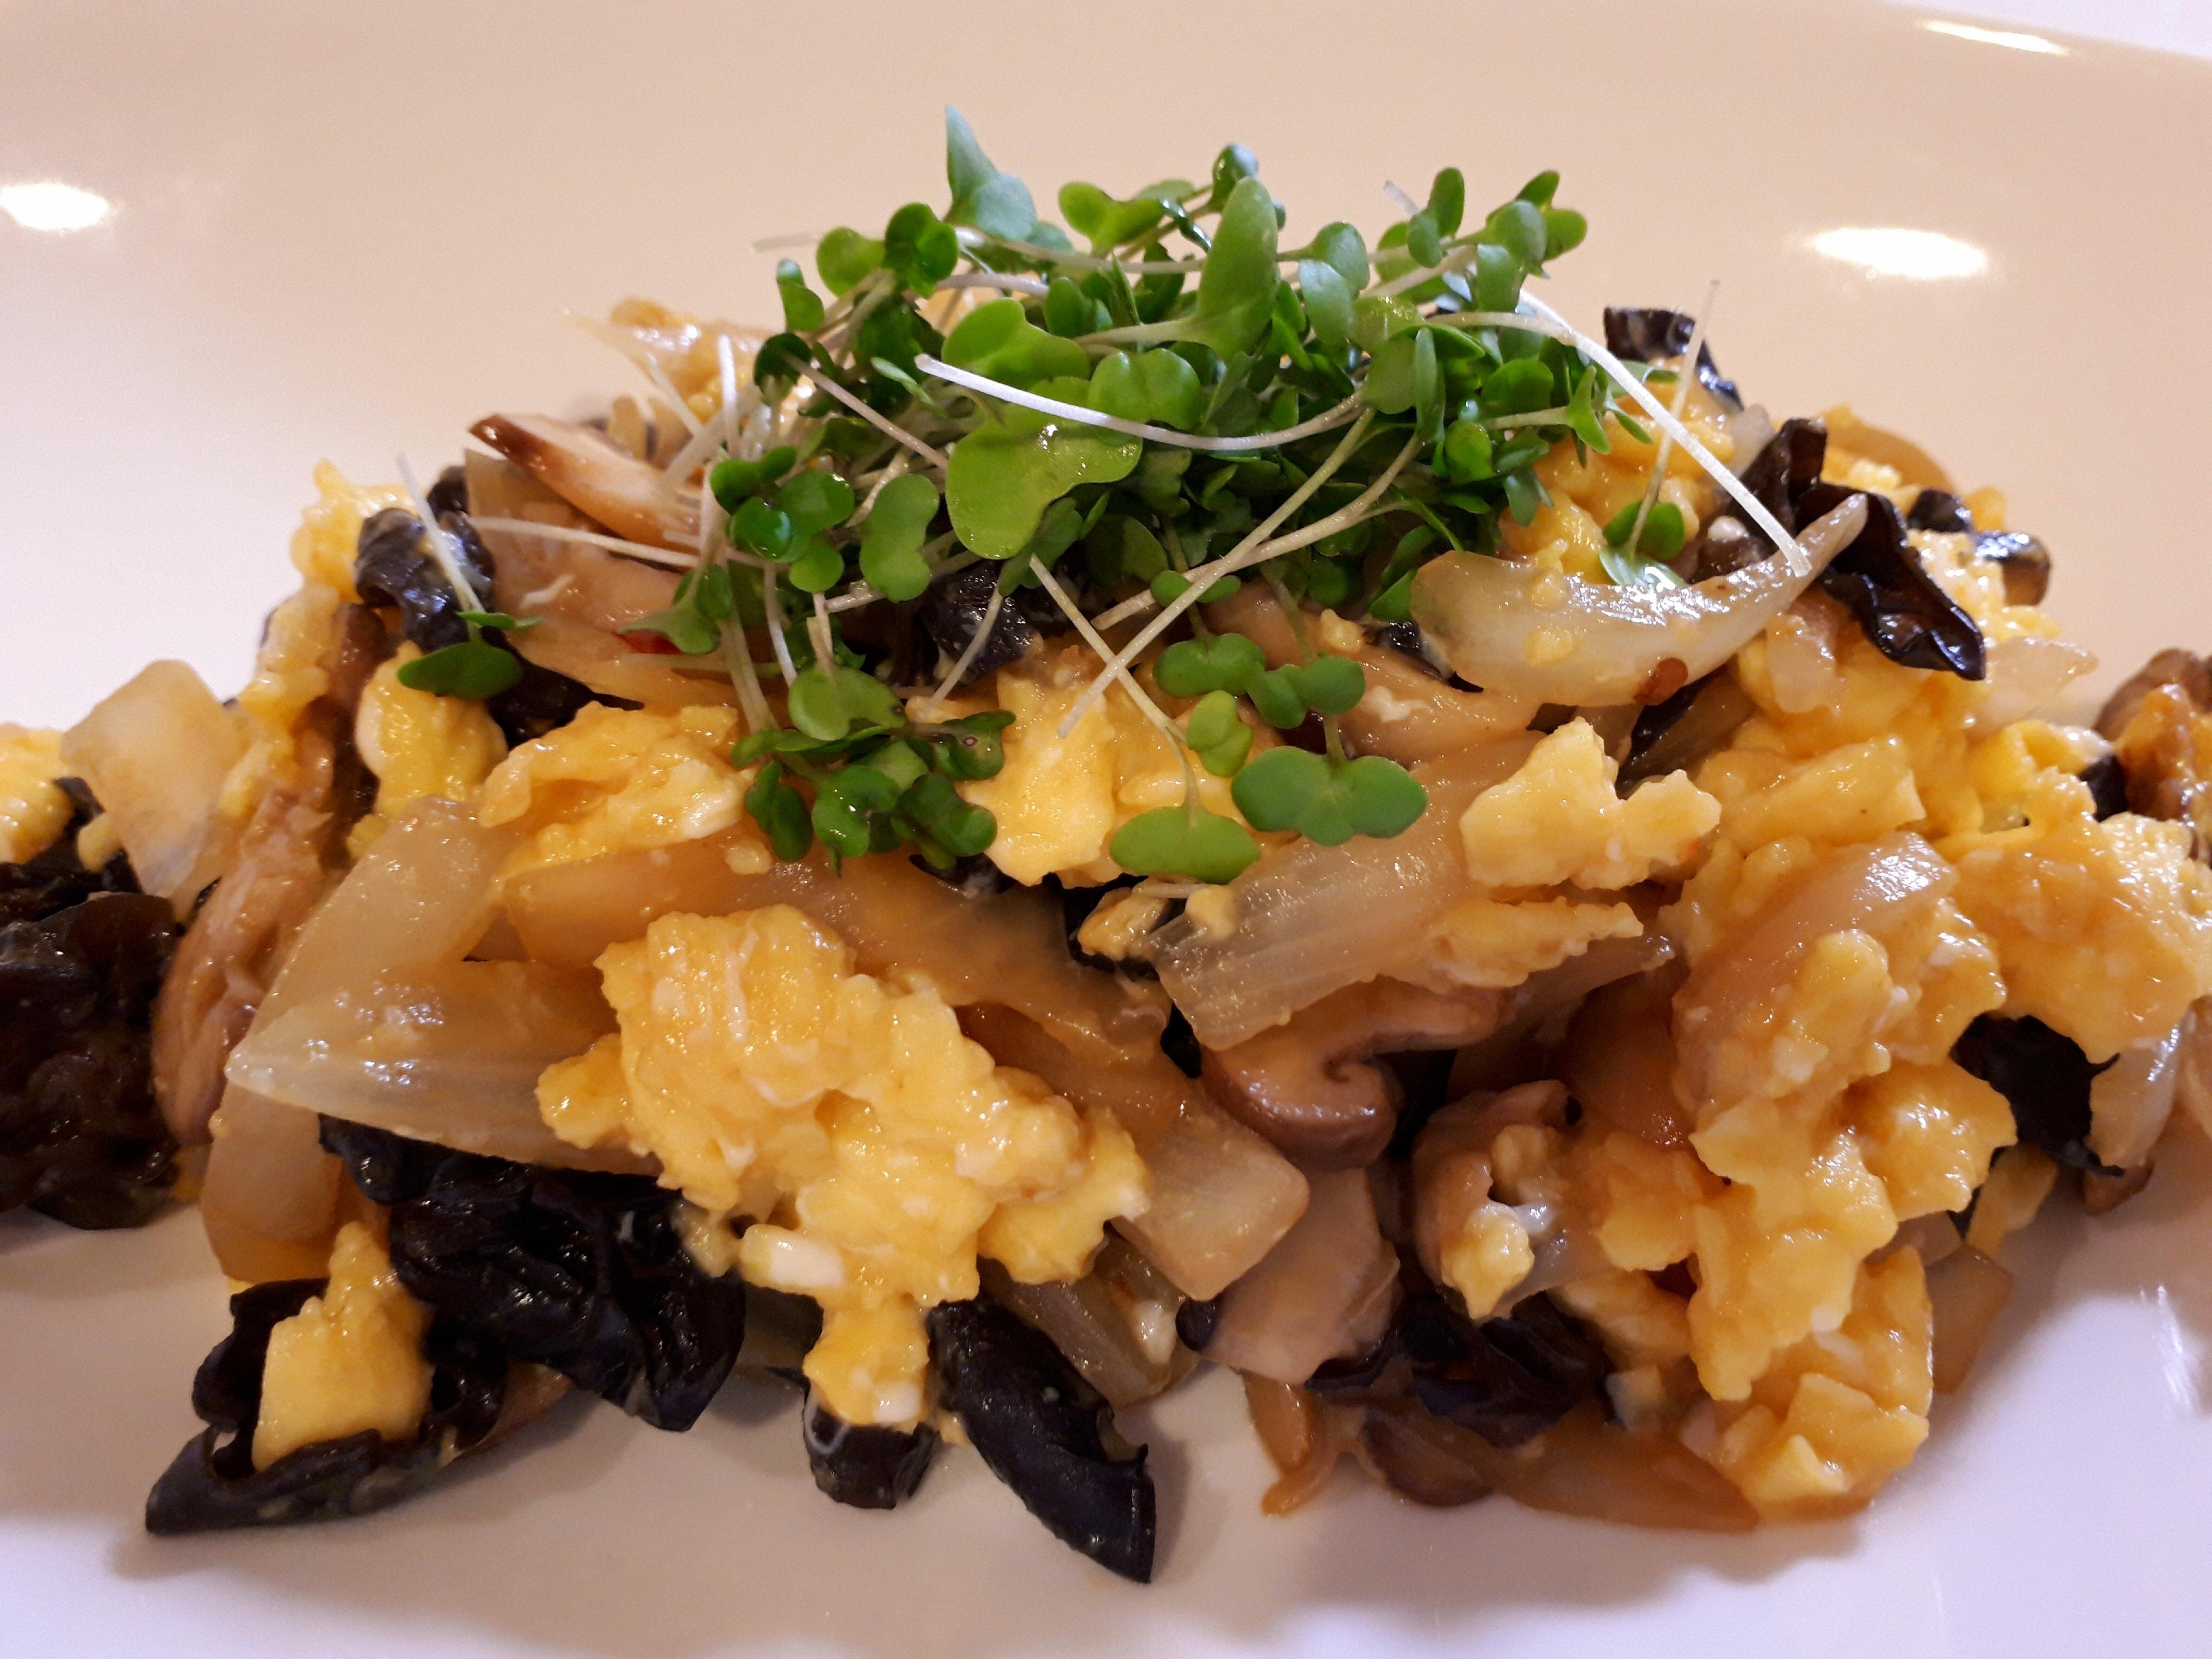 ふわふわ卵とキクラゲのオイスター炒めのレシピ 作り方 石田 ゆかり 料理教室検索サイト クスパ